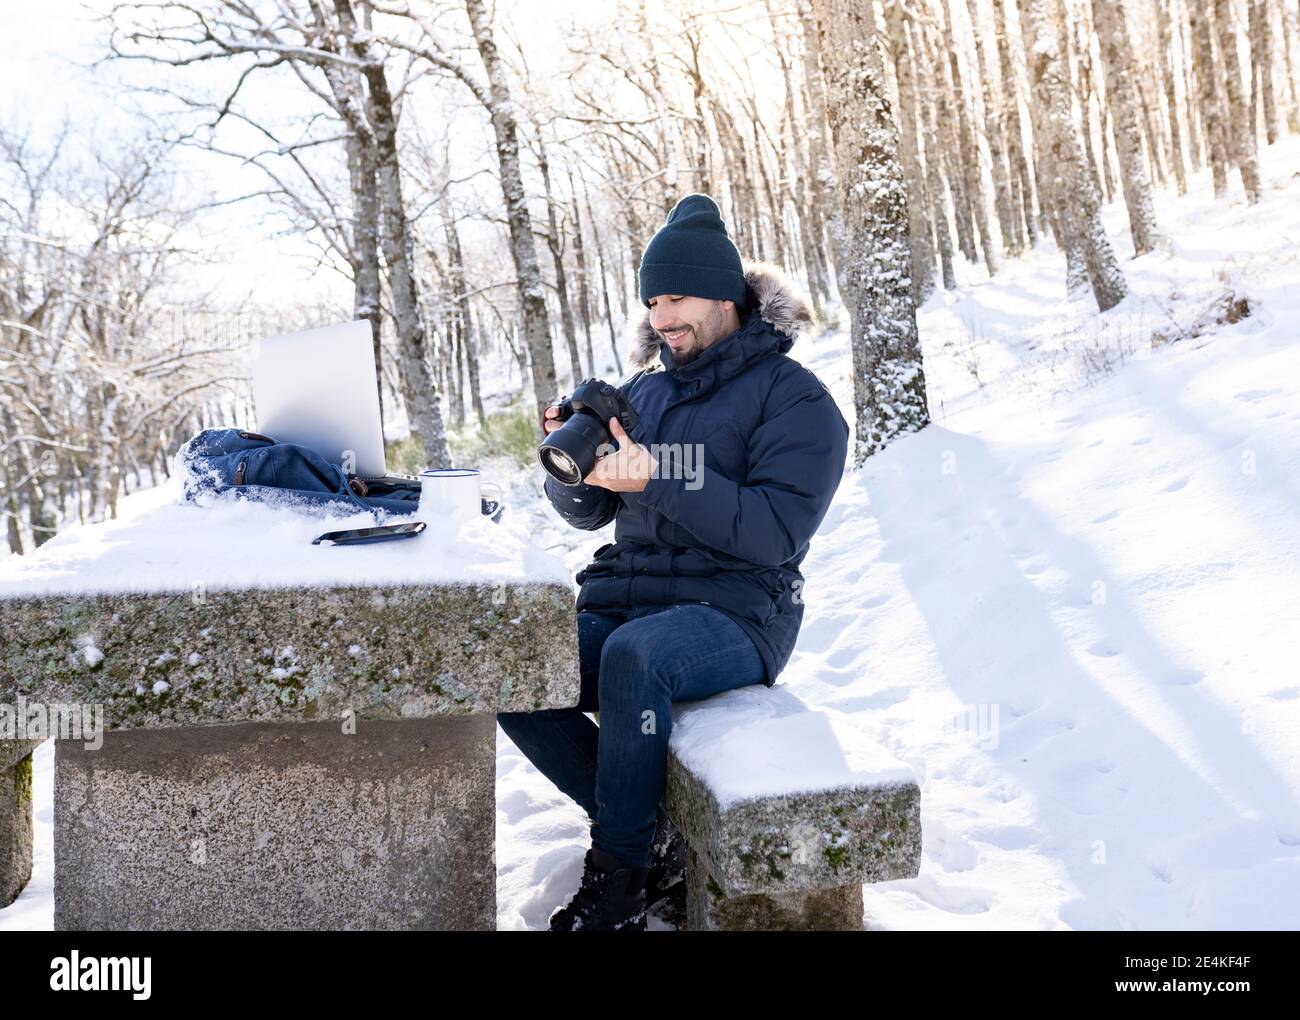 Lächelnder Fotograf mit Kamera, während er auf einer Felsbank sitzt Wald bei schneebedecktem Wetter Stockfoto